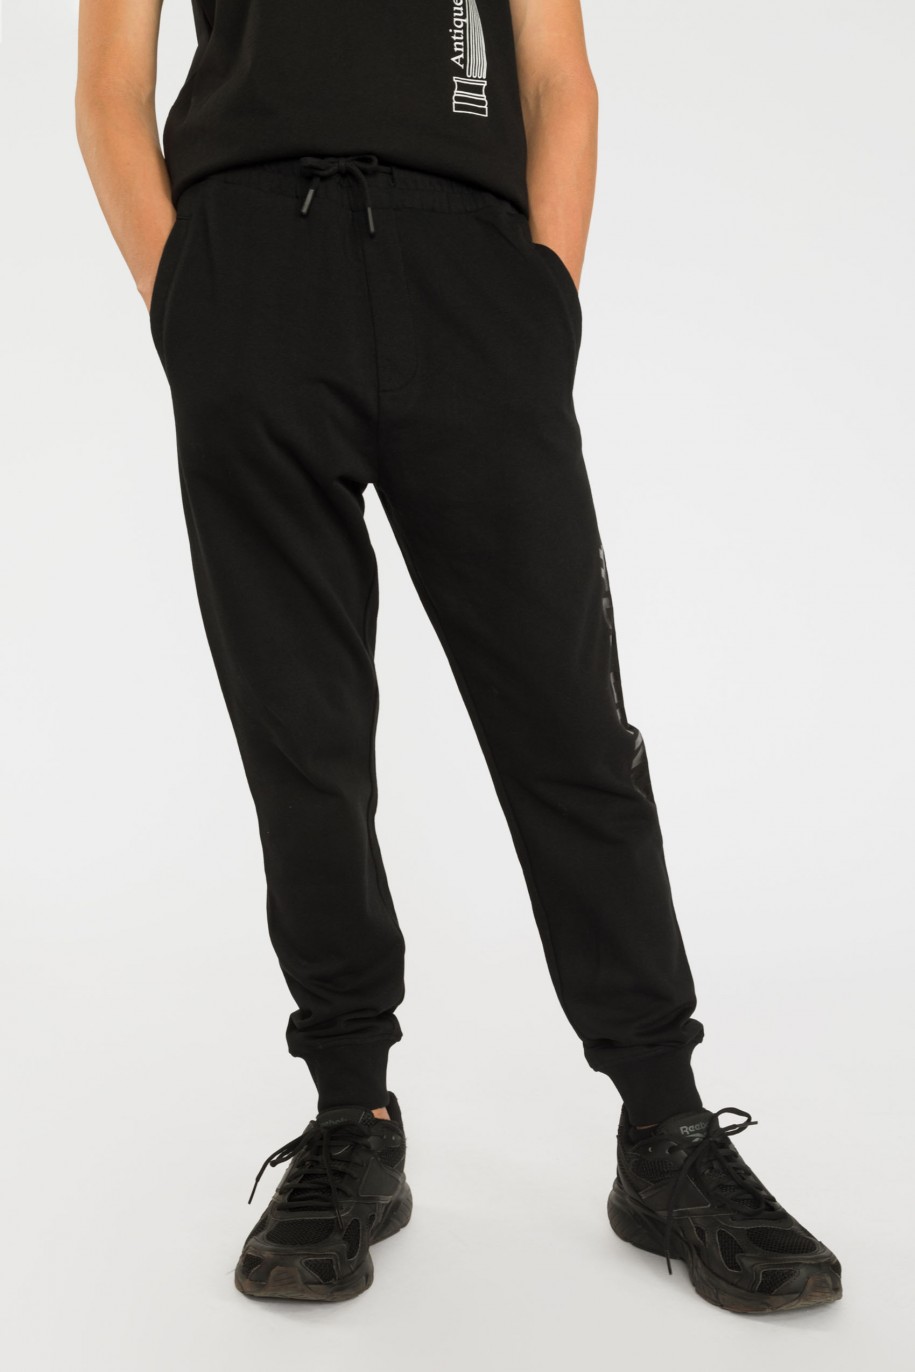 Czarne spodnie dresowe LEGEND - 39391